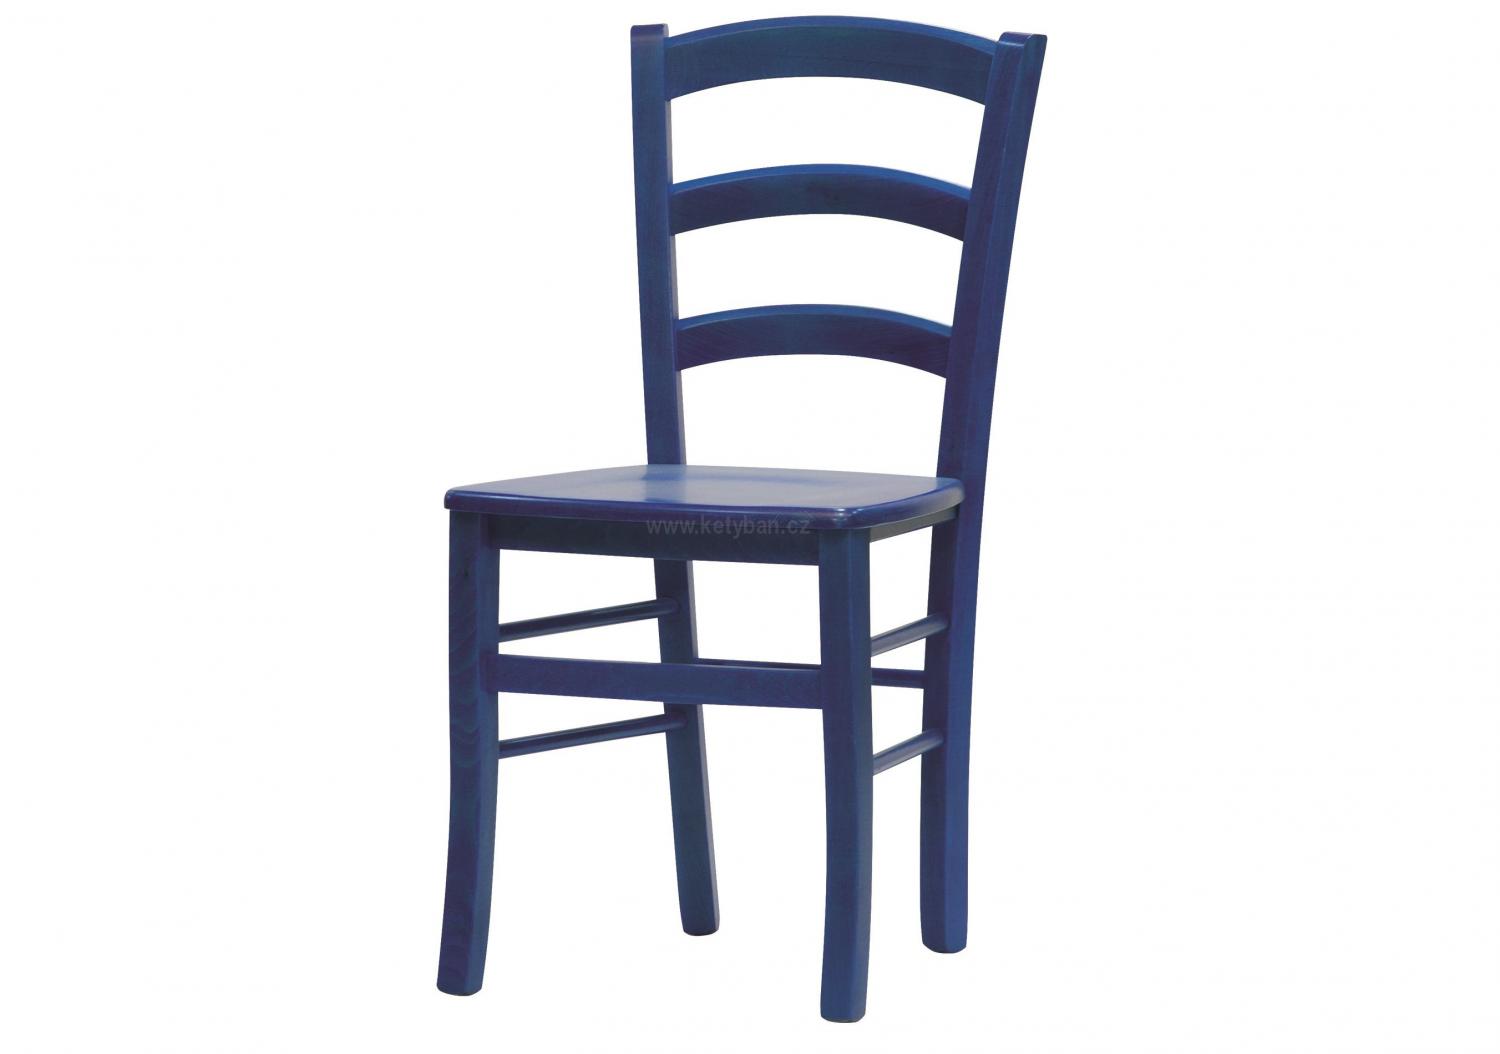 Populární židle Paysane masiv modrá